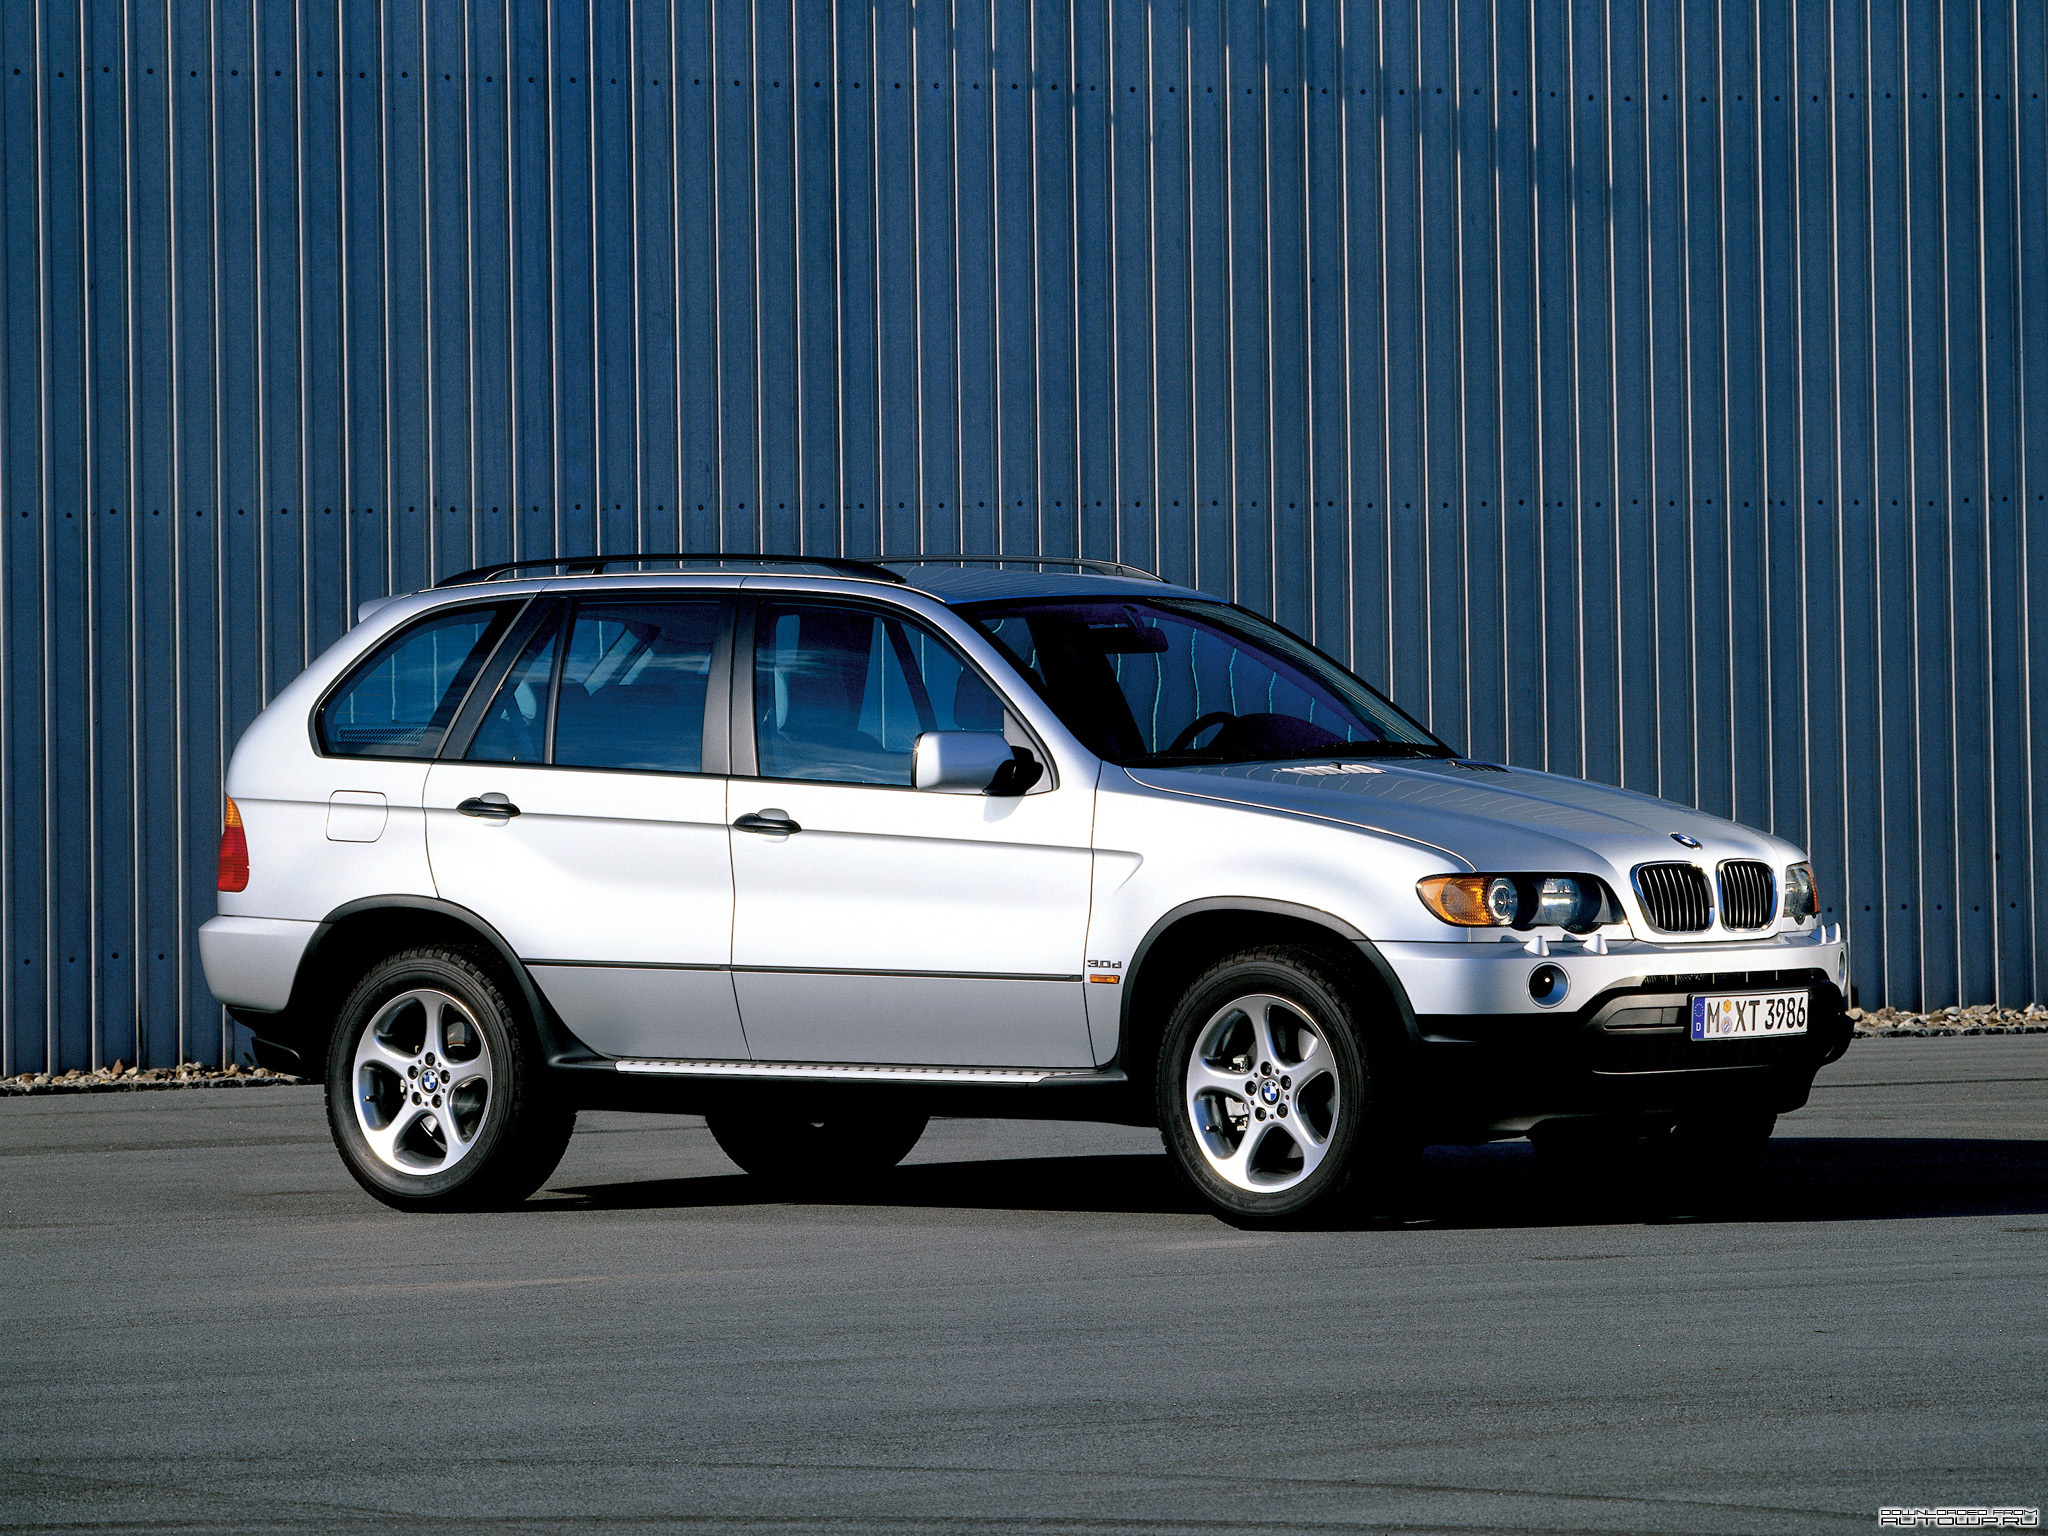 BMW x5 e53 2000